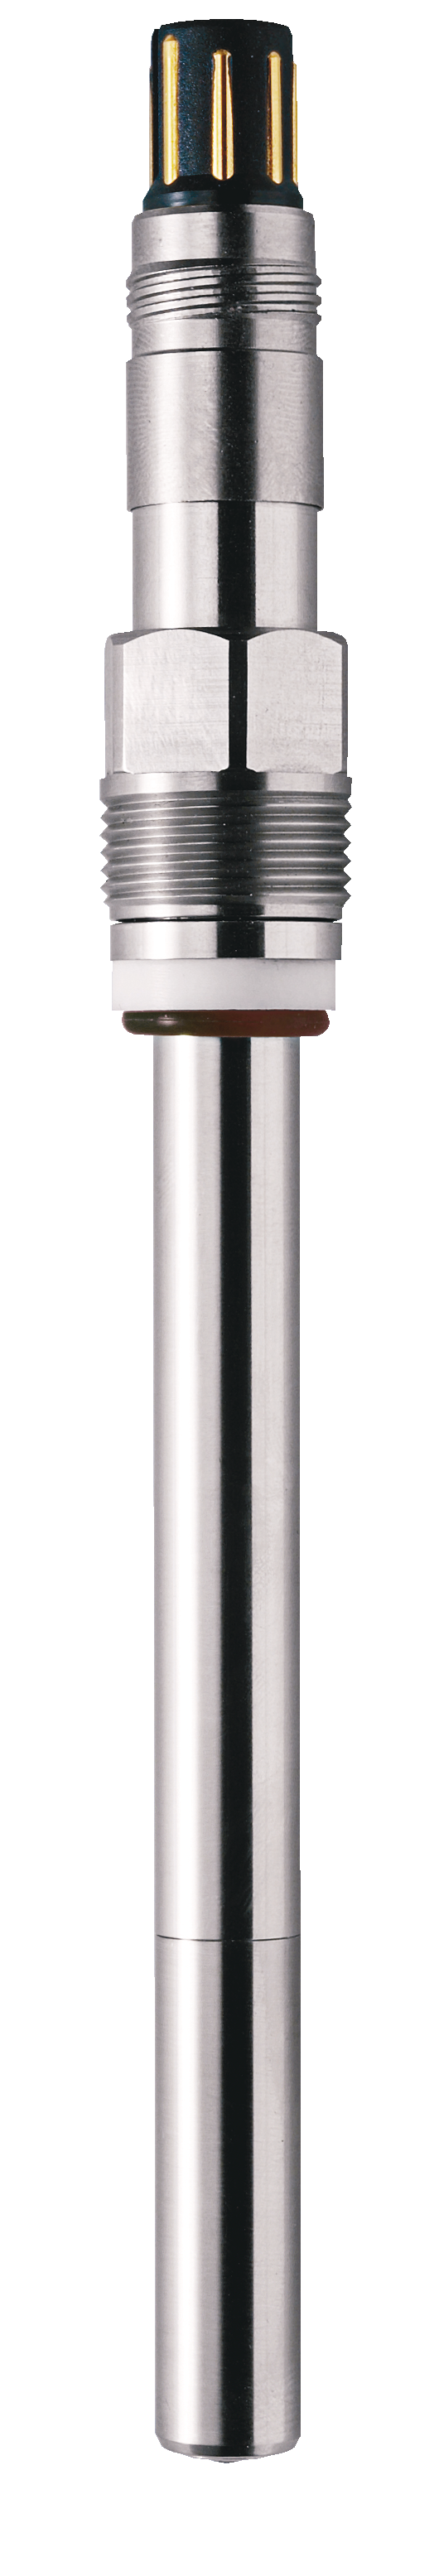 SE706 Sauerstoffsensor | VP | 120 mm | Messbereich (Auflösung) 0 ... 50 mg/l (6 μg/l)